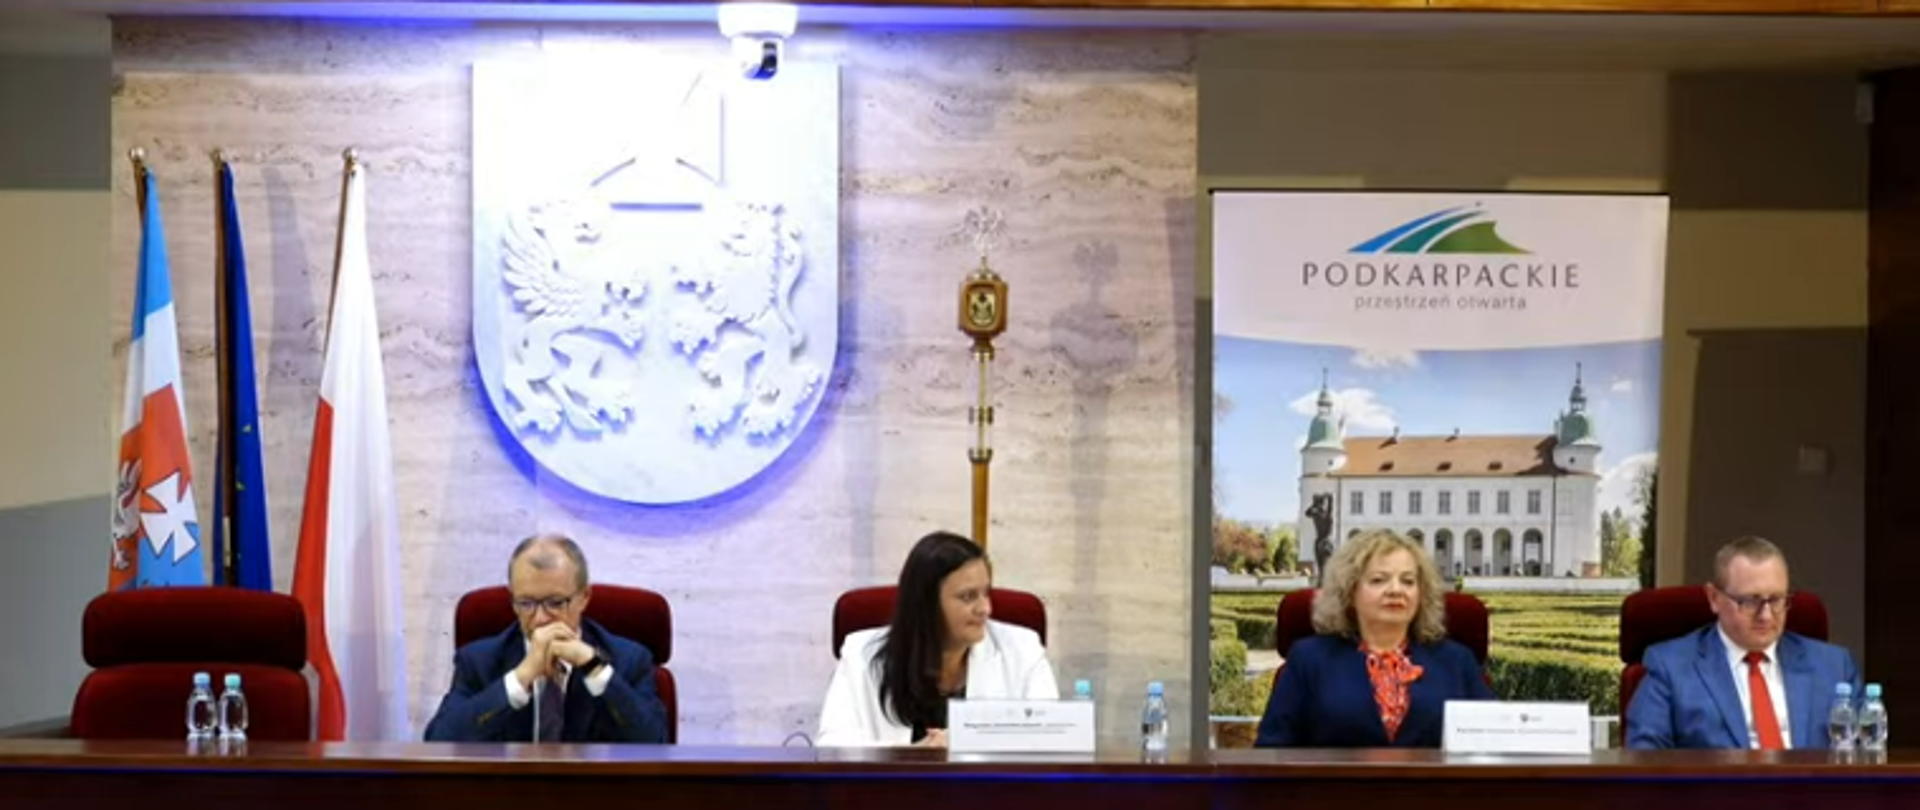 Za stołem konferencyjnym siedzą 4 osoby, w środku dwie kobiety, po bokach mężczyźni. Za nimi godło woj. podkarpackiego, banner ze zdjęciem pałacu i podpisem Podkarpacie oraz flagi Polski i UE